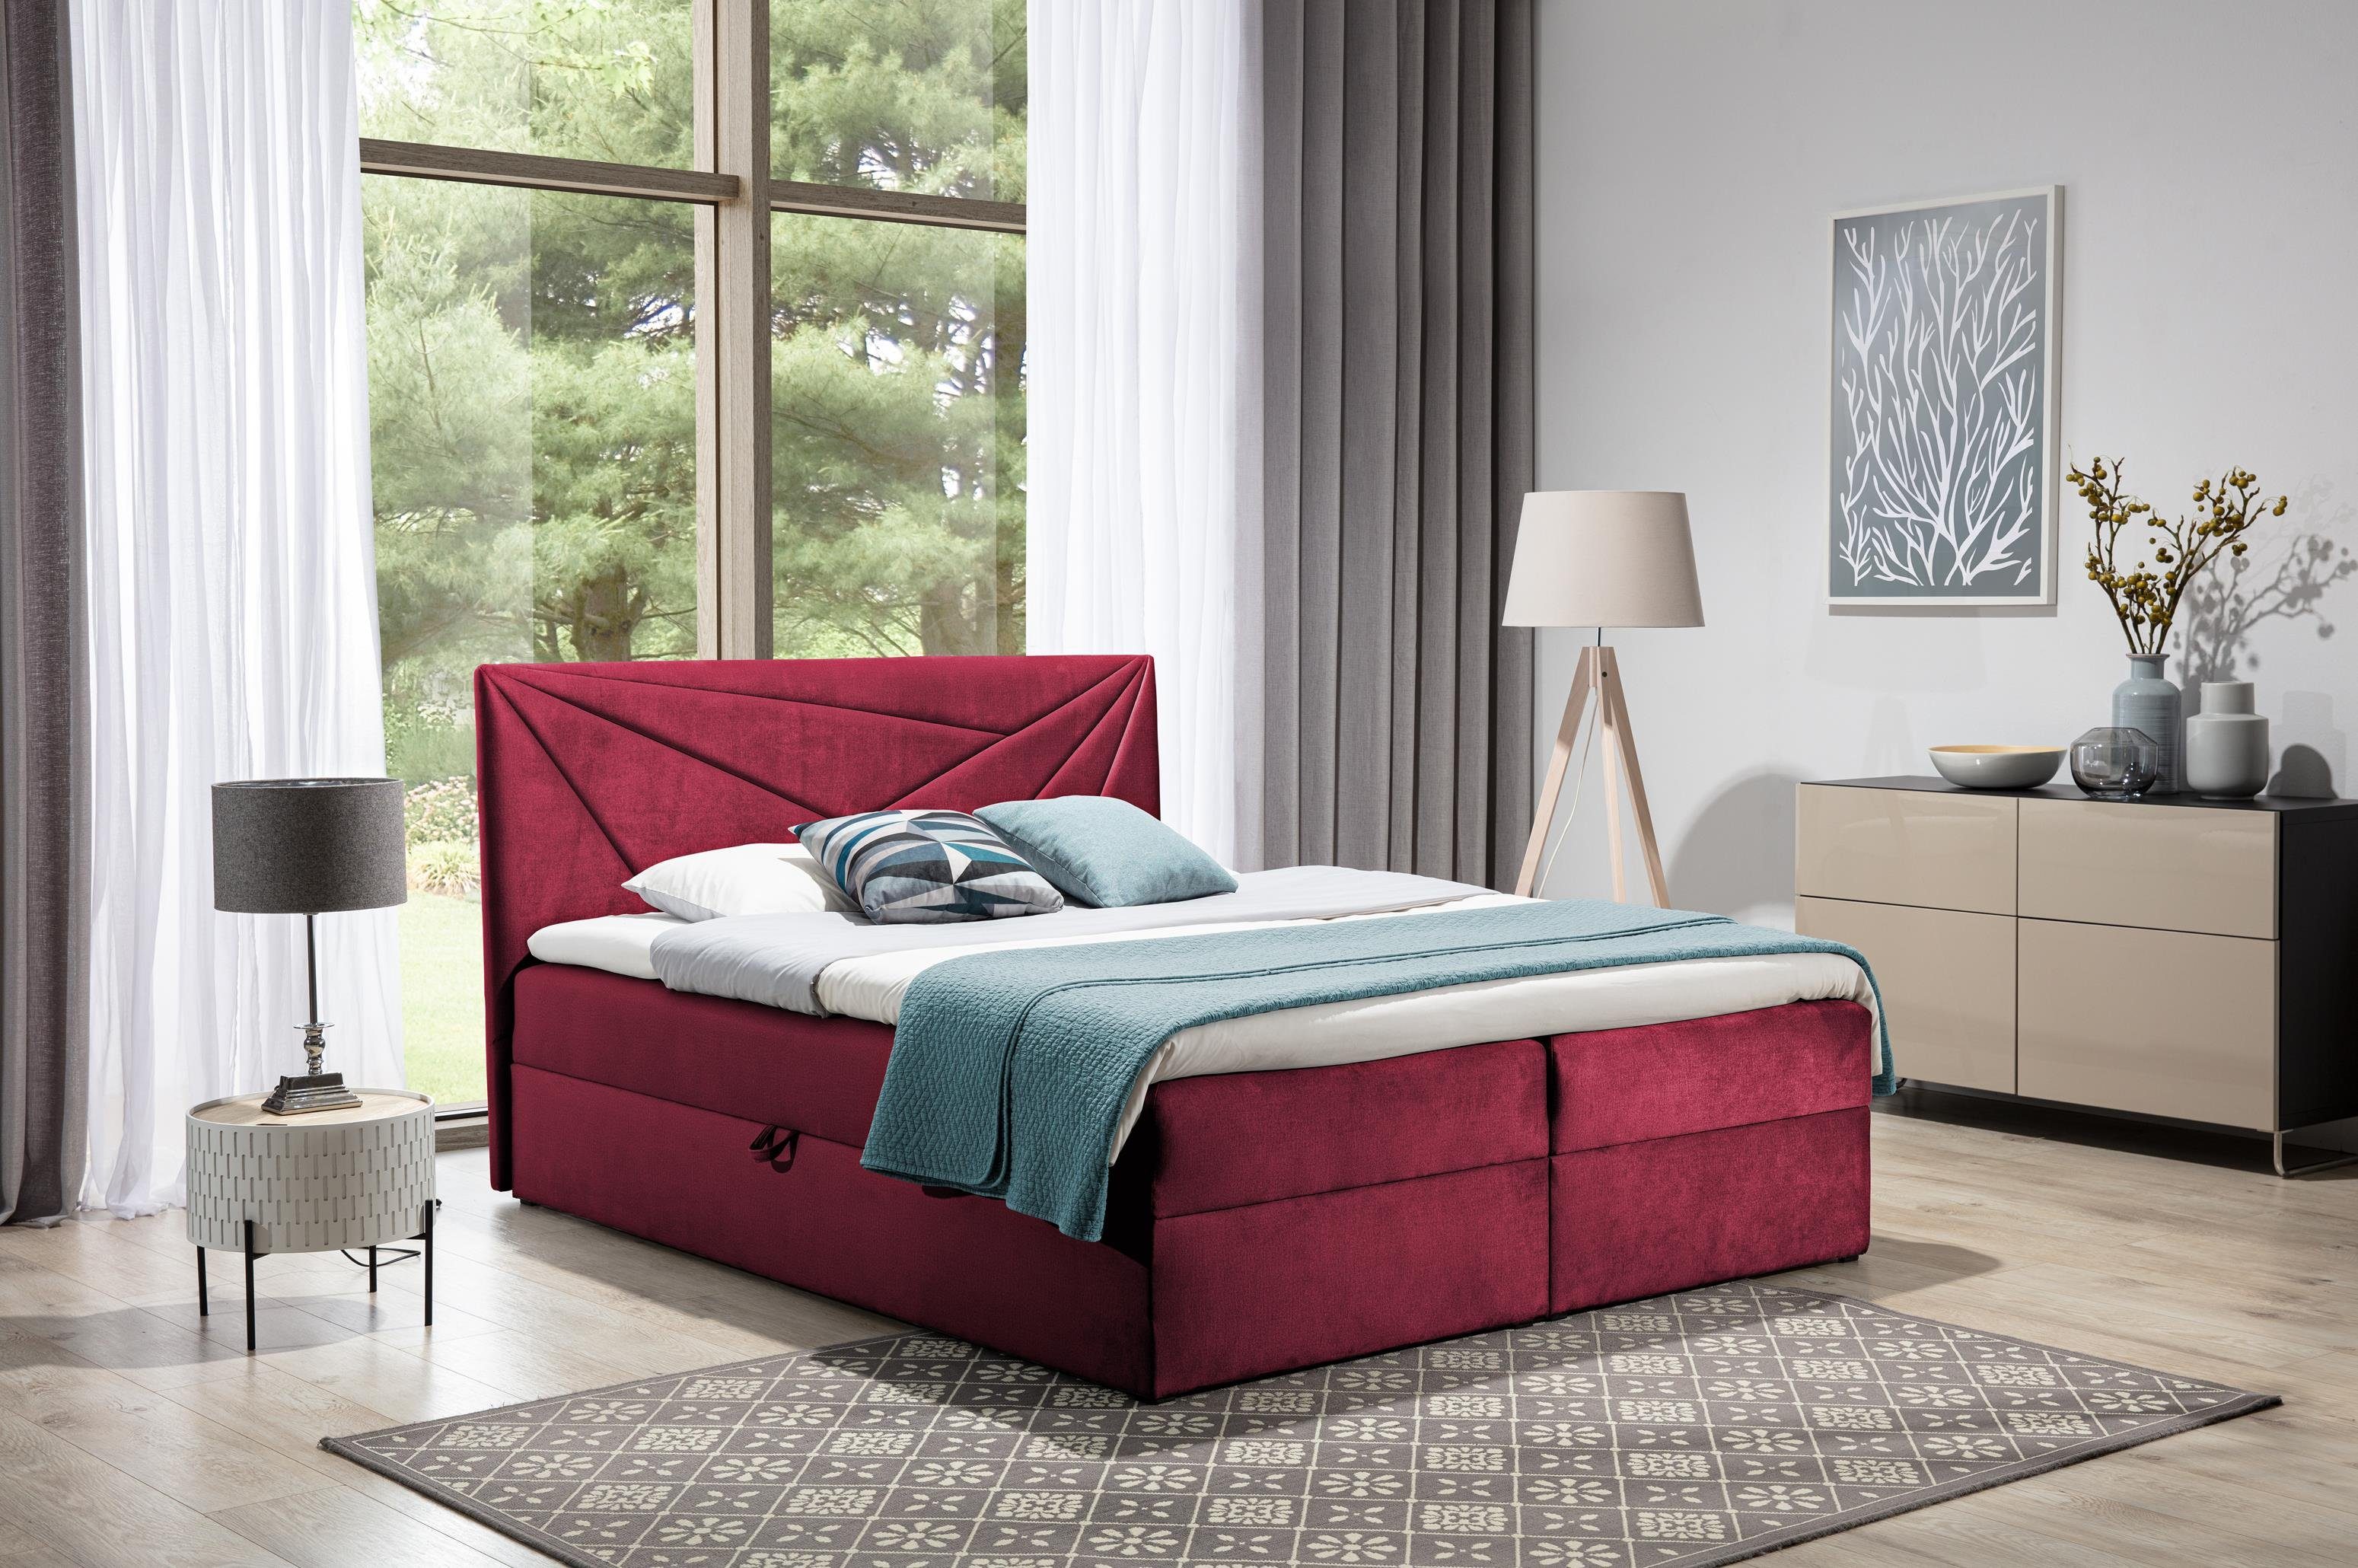 Furnix Boxspringbett TREZO 5 120x200 Doppelbett mit Bettkasten und Topper, pflegeleichte hochwertige Stoffe Rot